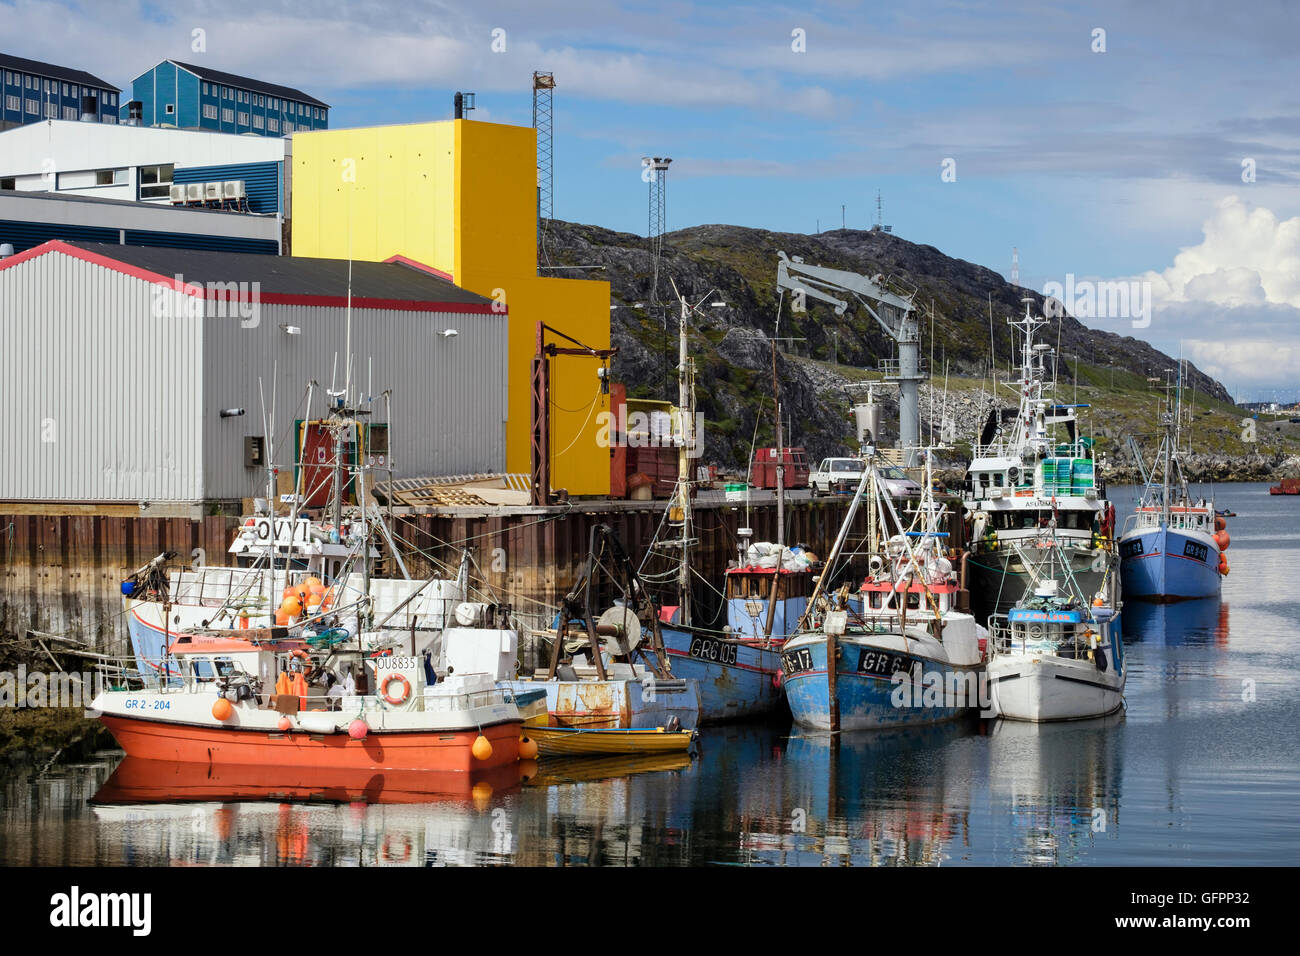 Les bateaux de pêche amarré quai dans le port de l'Atlantique par l'été 2016 port. Nuuk (Godthab) sud-ouest du Groenland Sermersooq Banque D'Images